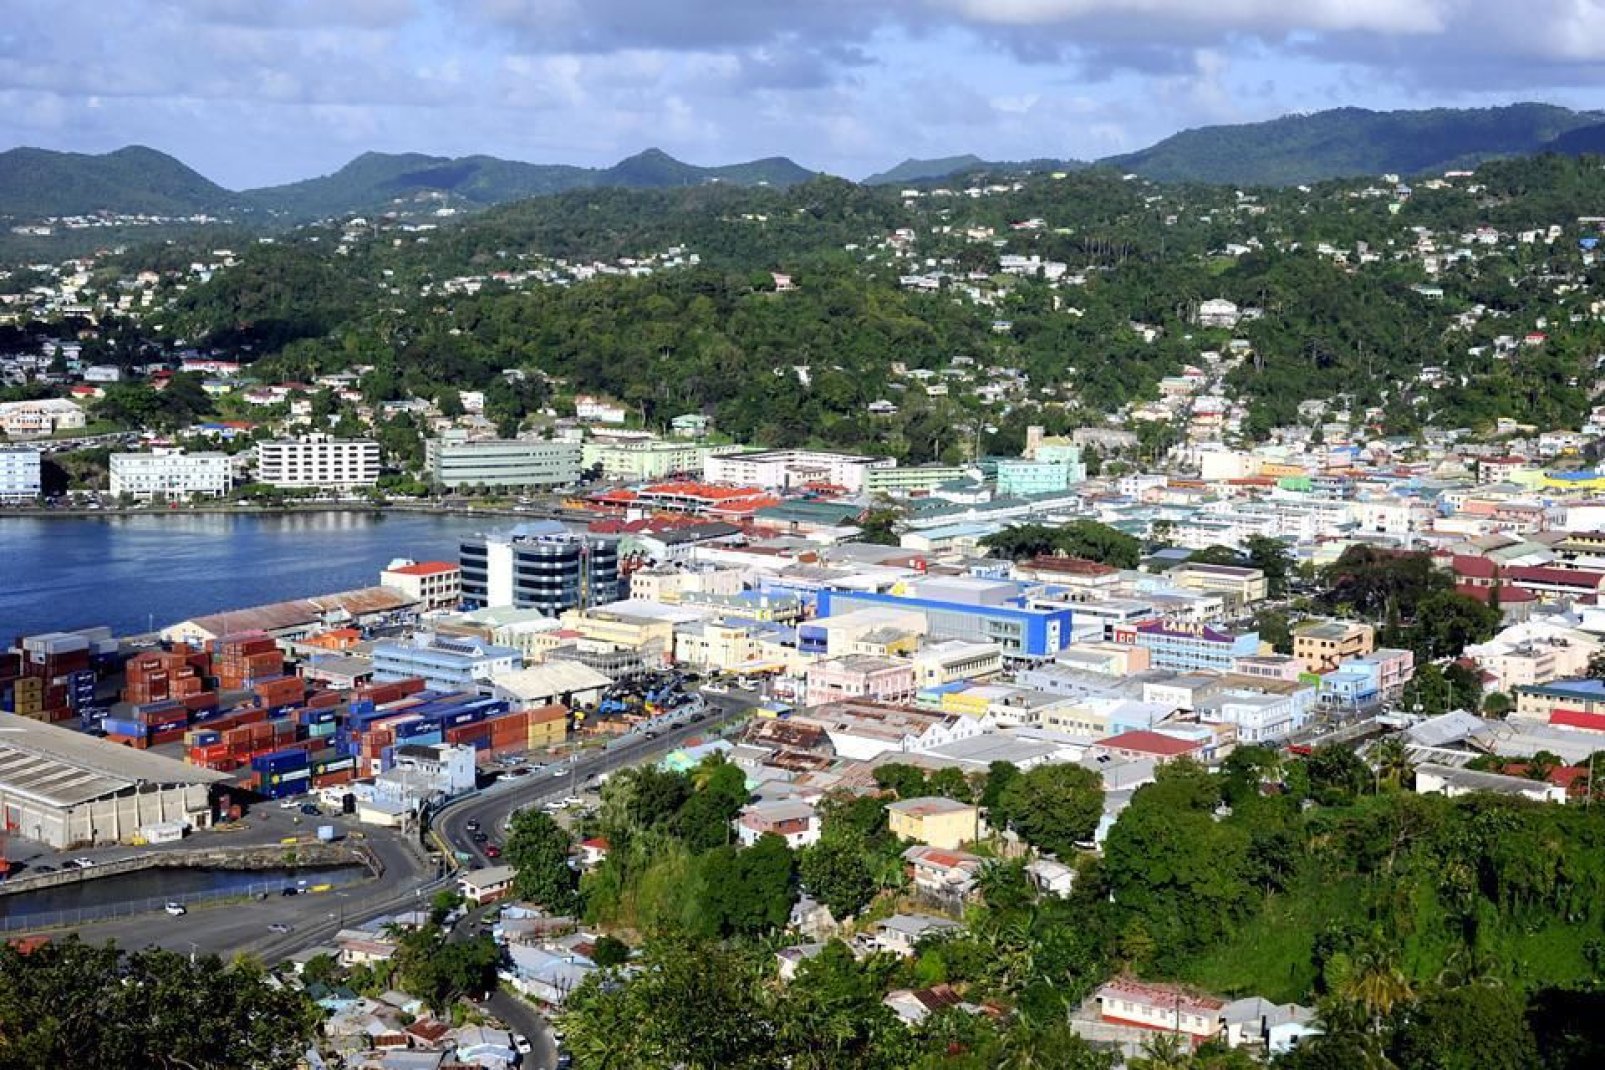 Die politische und wirtschaftliche Hauptstadt von St. Lucia zählt ungefähr 65'000 Einwohner.